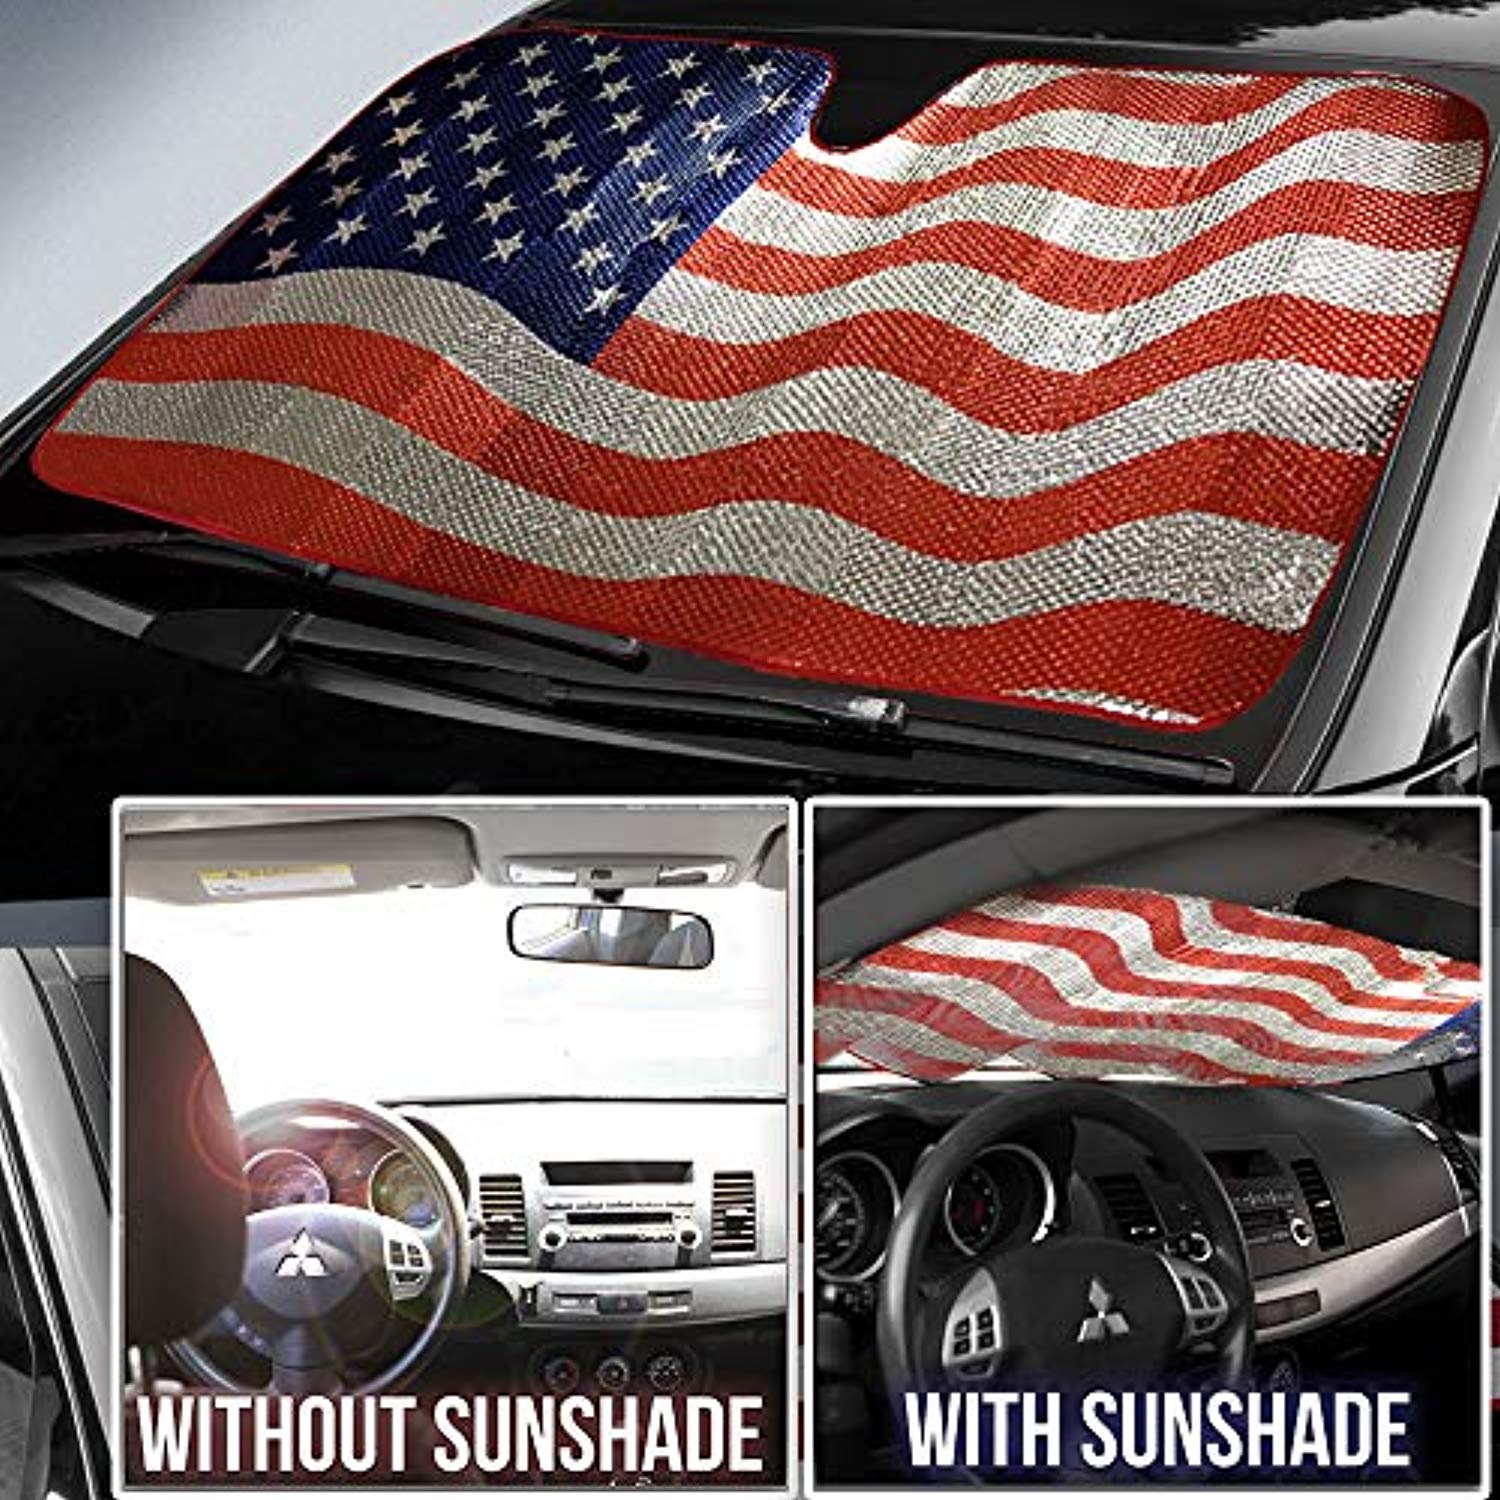 Car Windshield Sun Shade American Flag Sunshades - 63'' * 28.5''